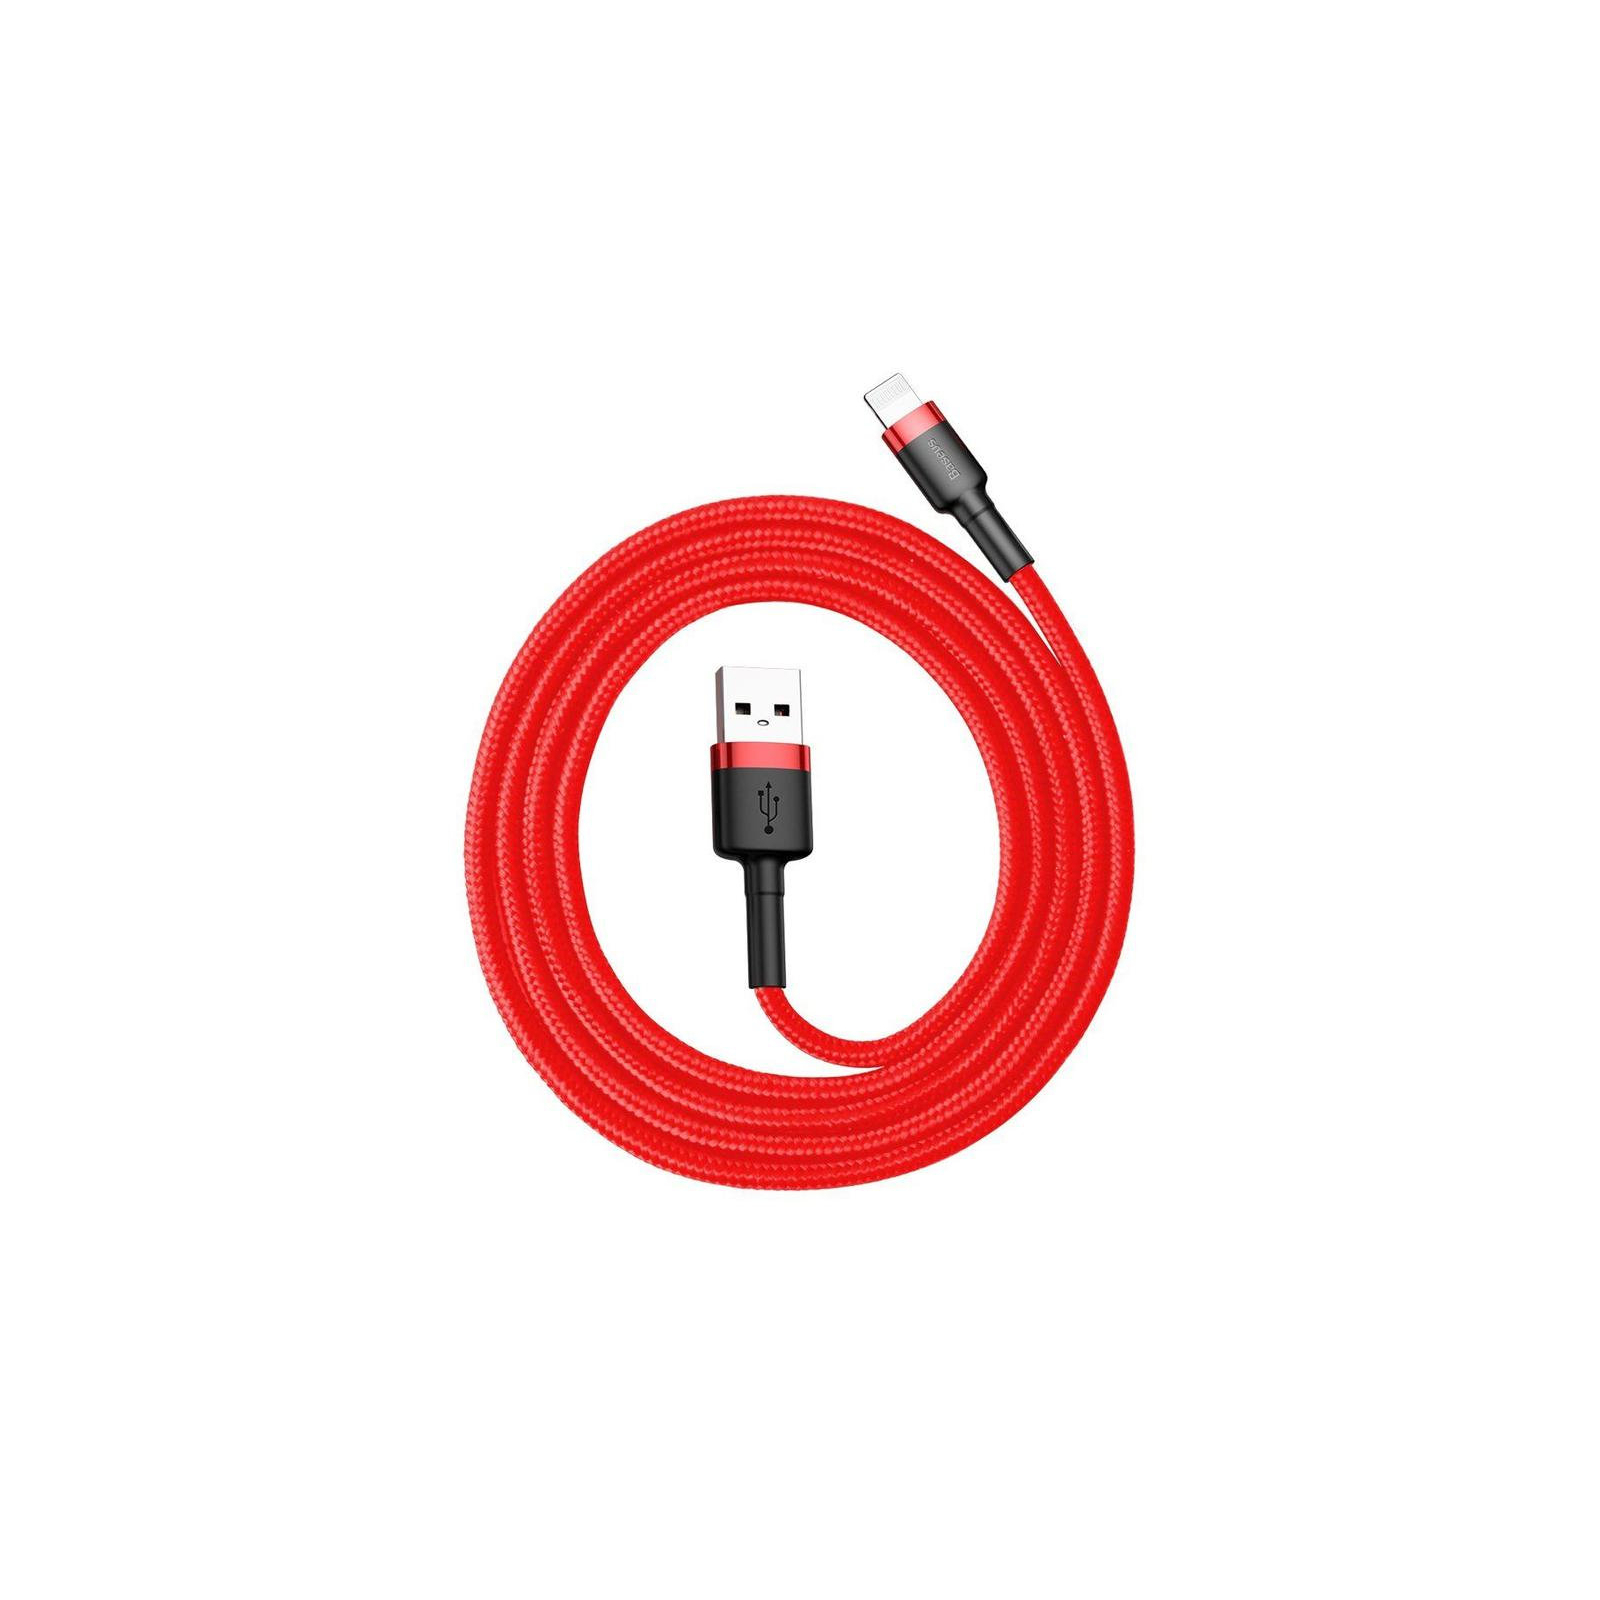 Дата кабель USB 2.0 AM to Lightning 1.0m Cafule 2.4A red+red Baseus (CALKLF-B09) изображение 4